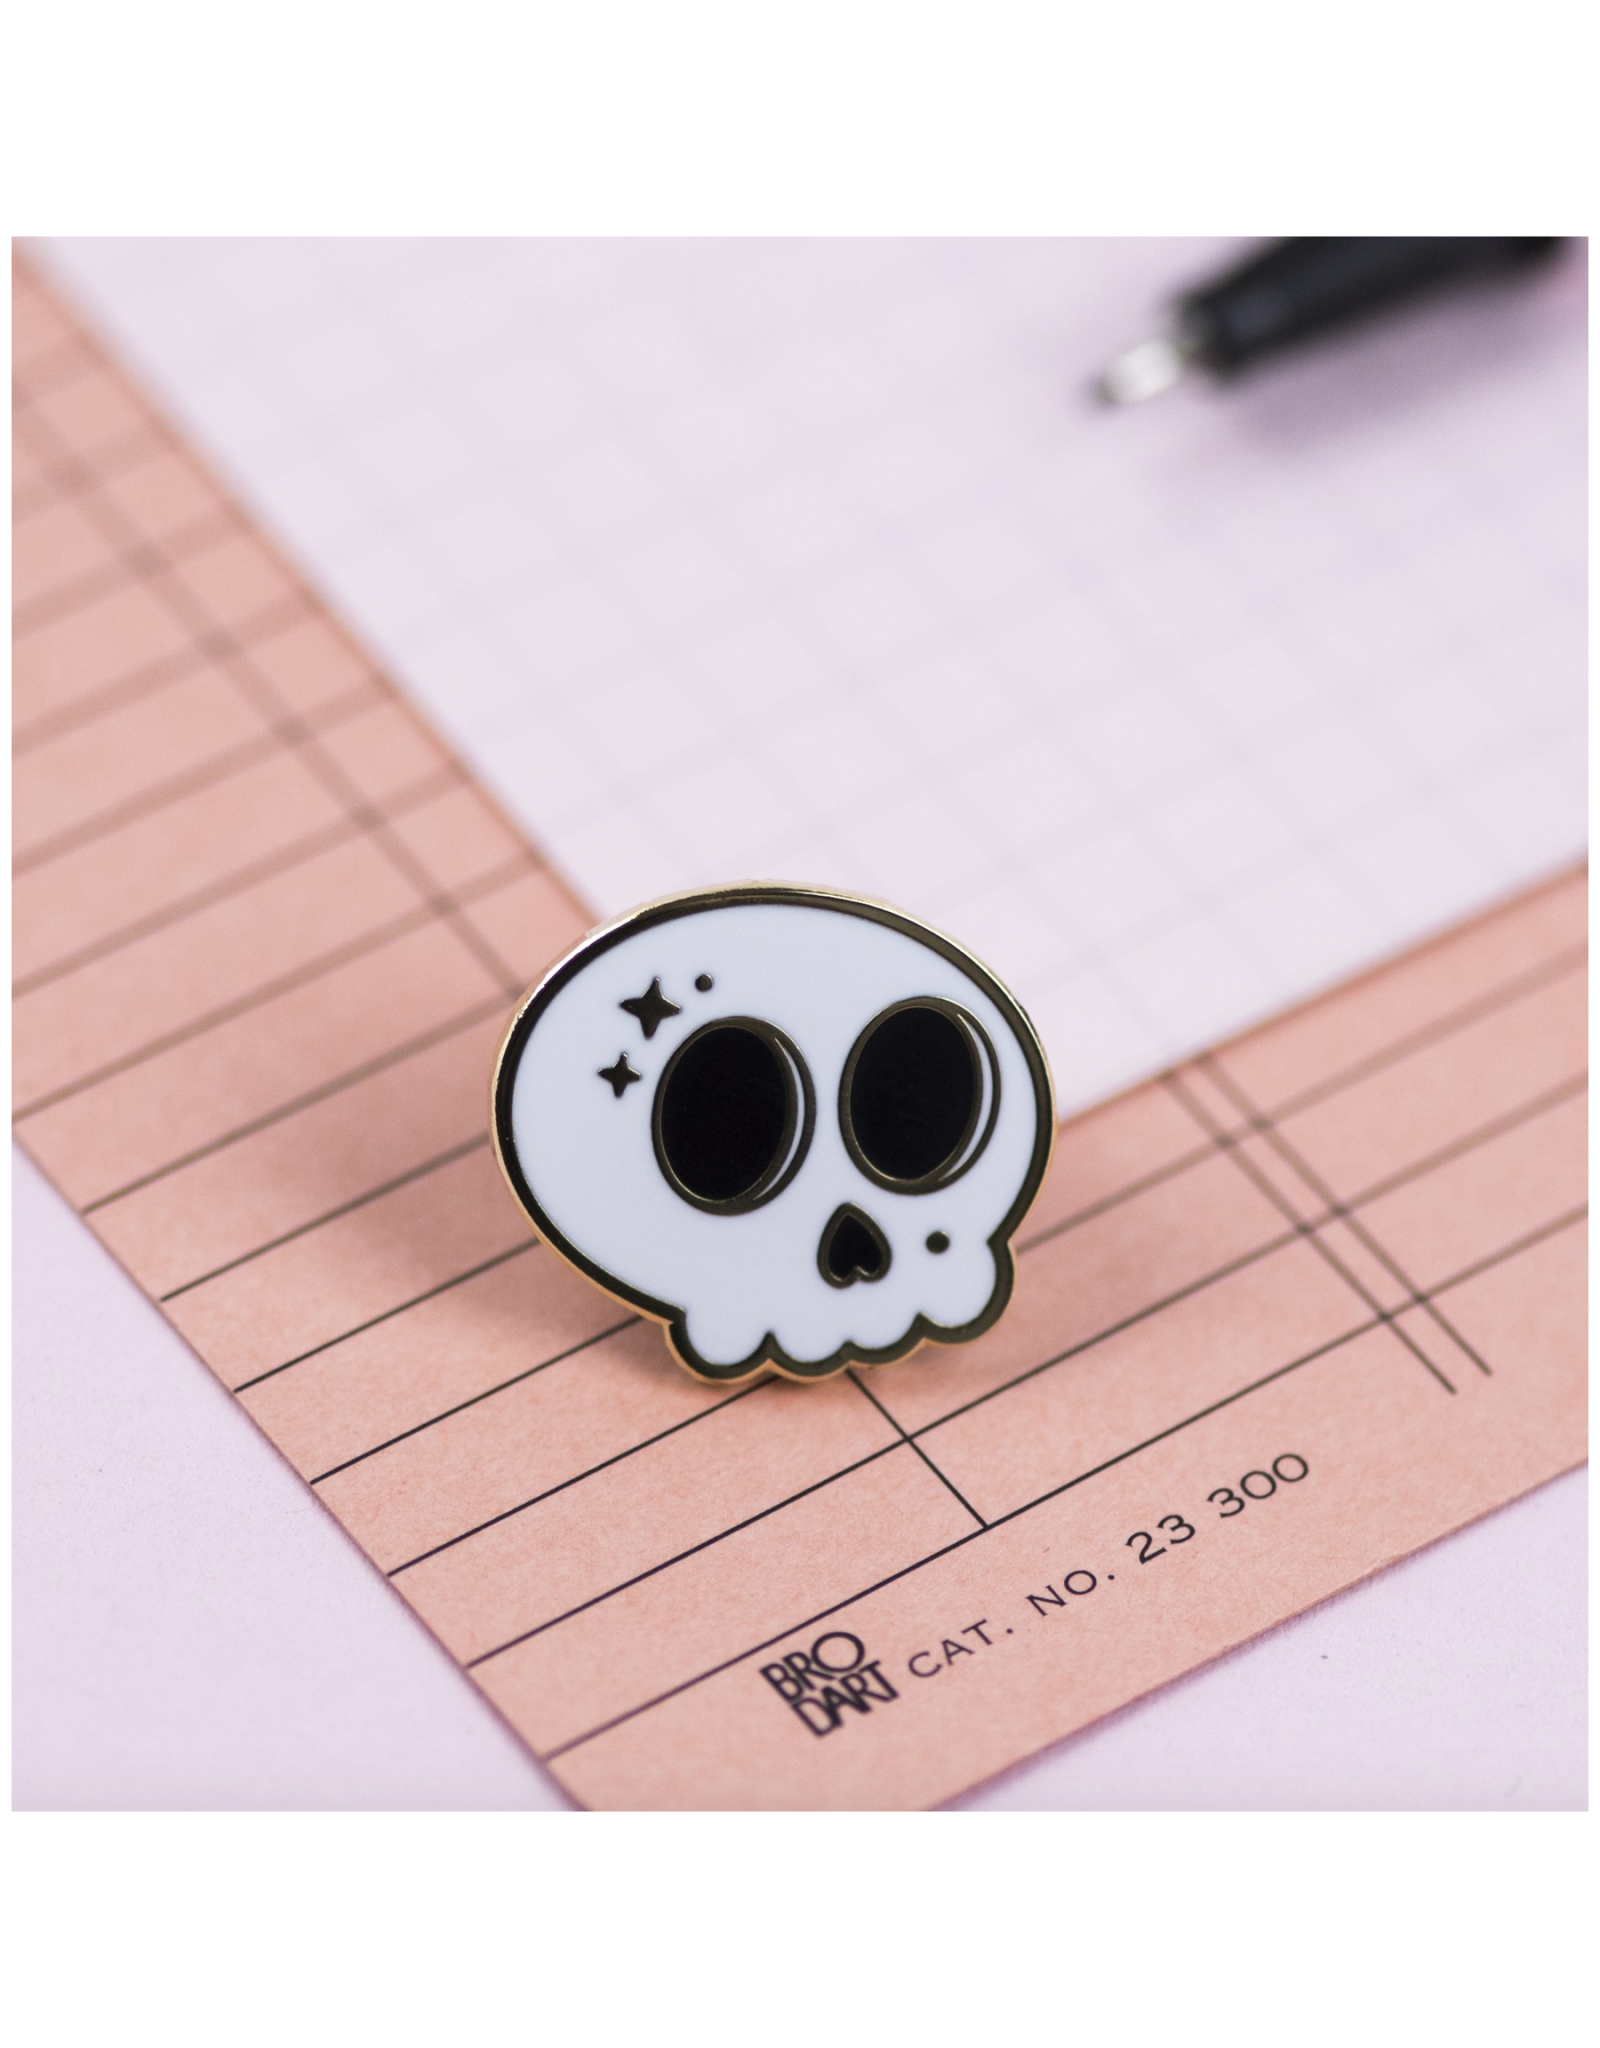 Cute Skull Pin